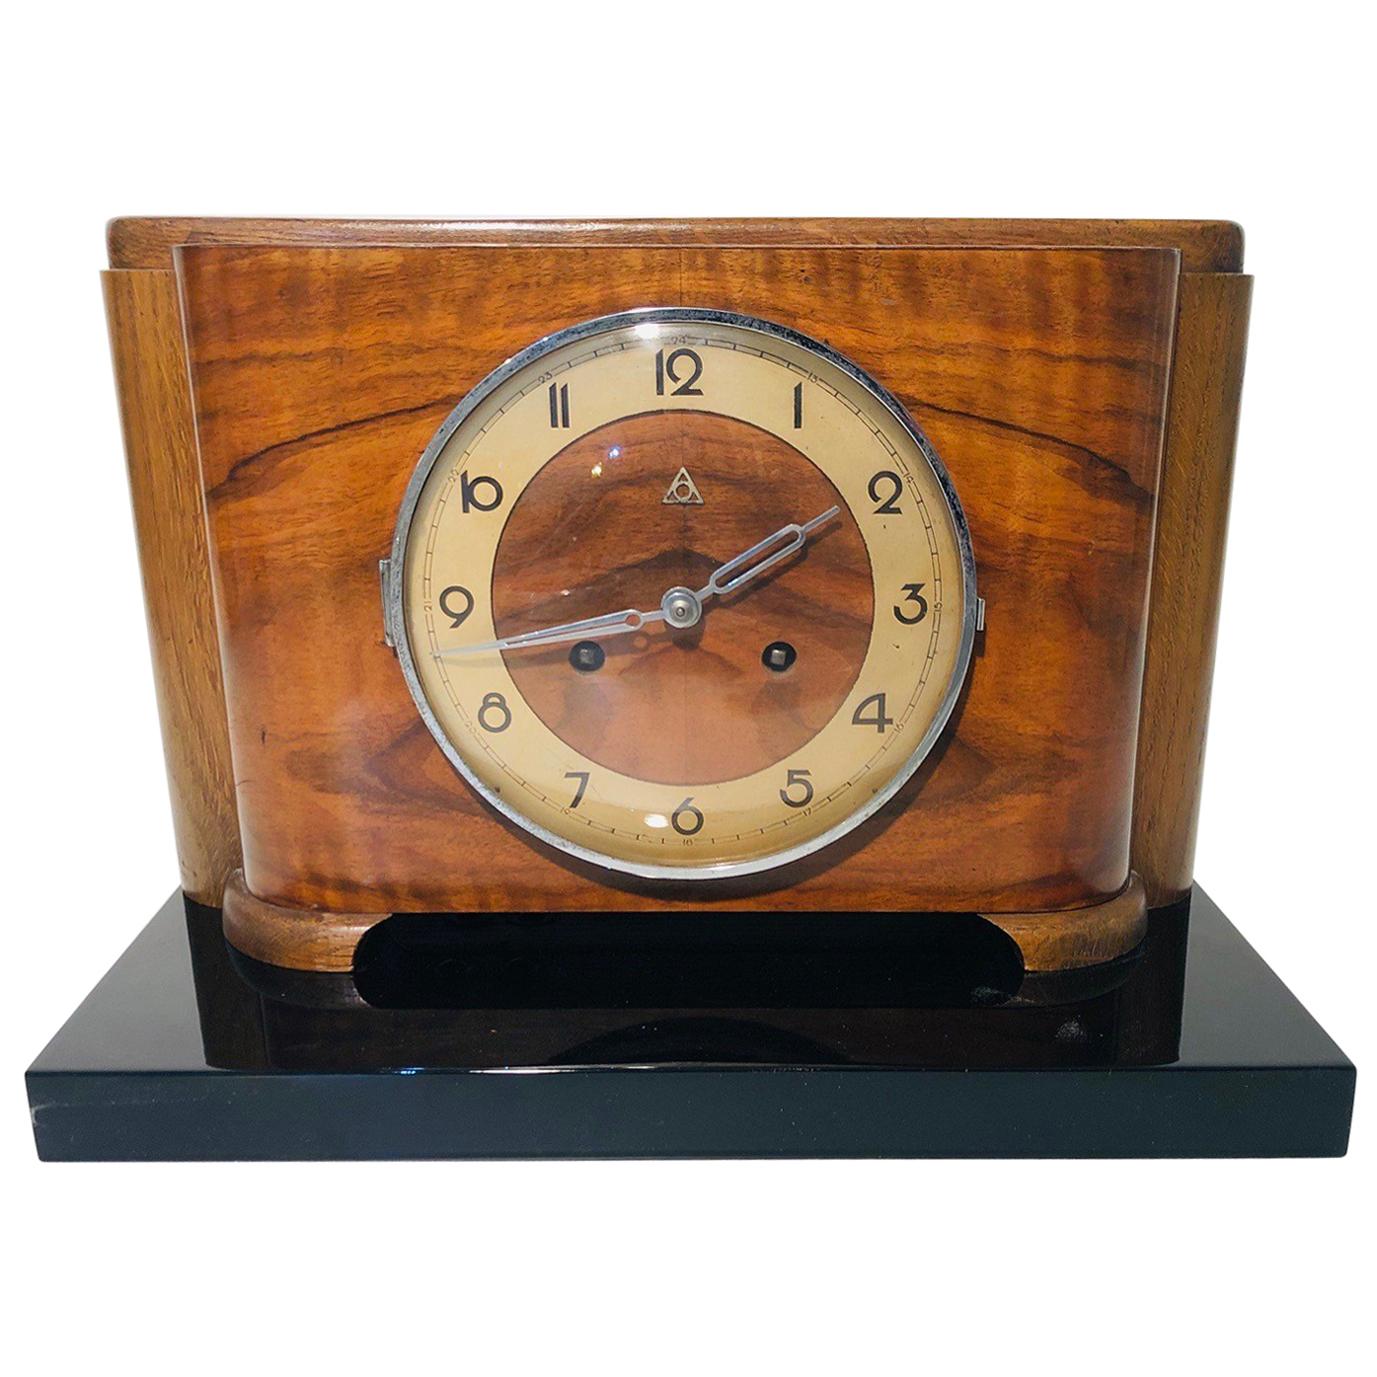 Alpina Art Deco Table Clock, 1920s